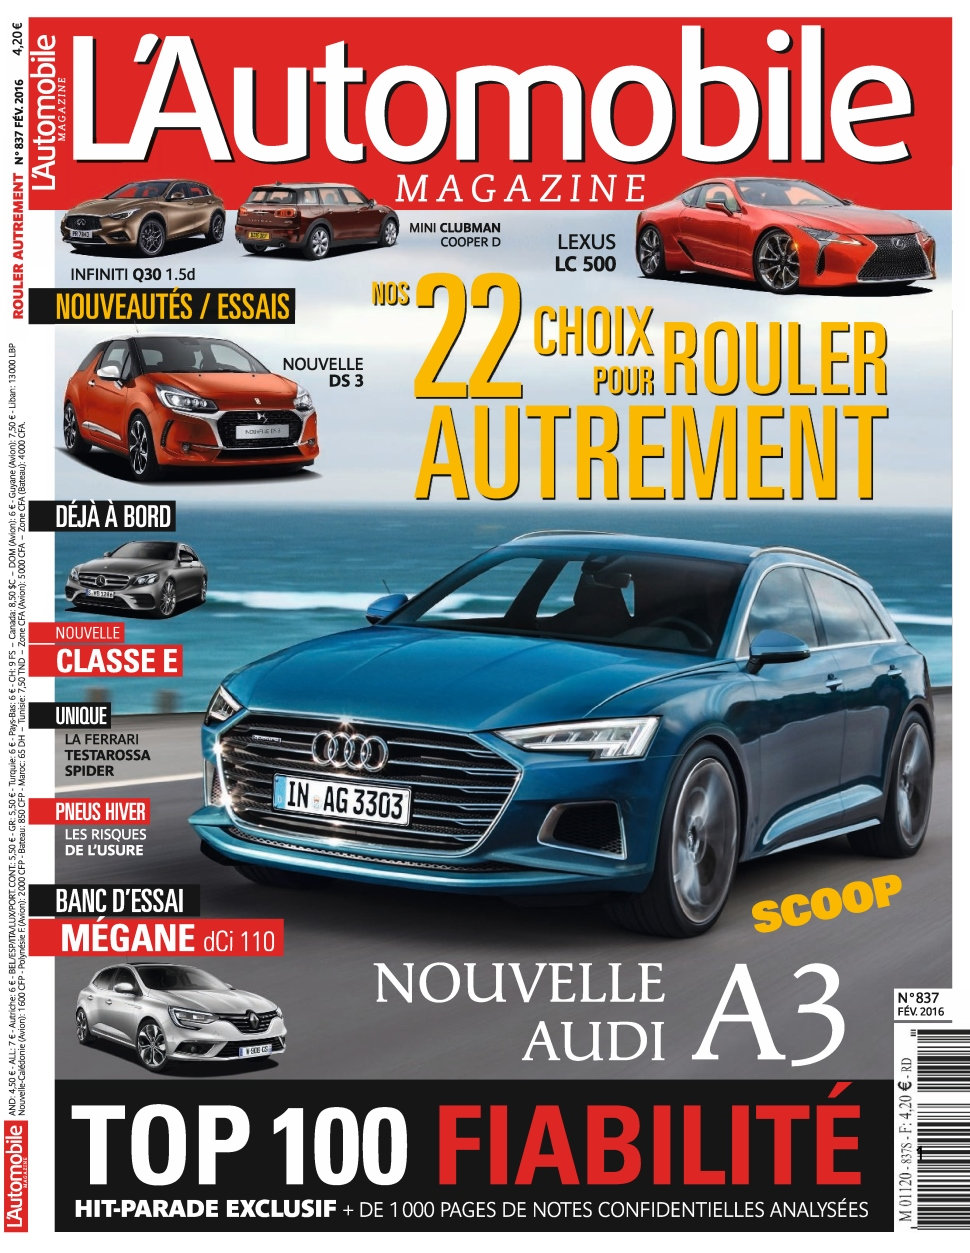 L'Automobile magazine N°837 - Février 2016